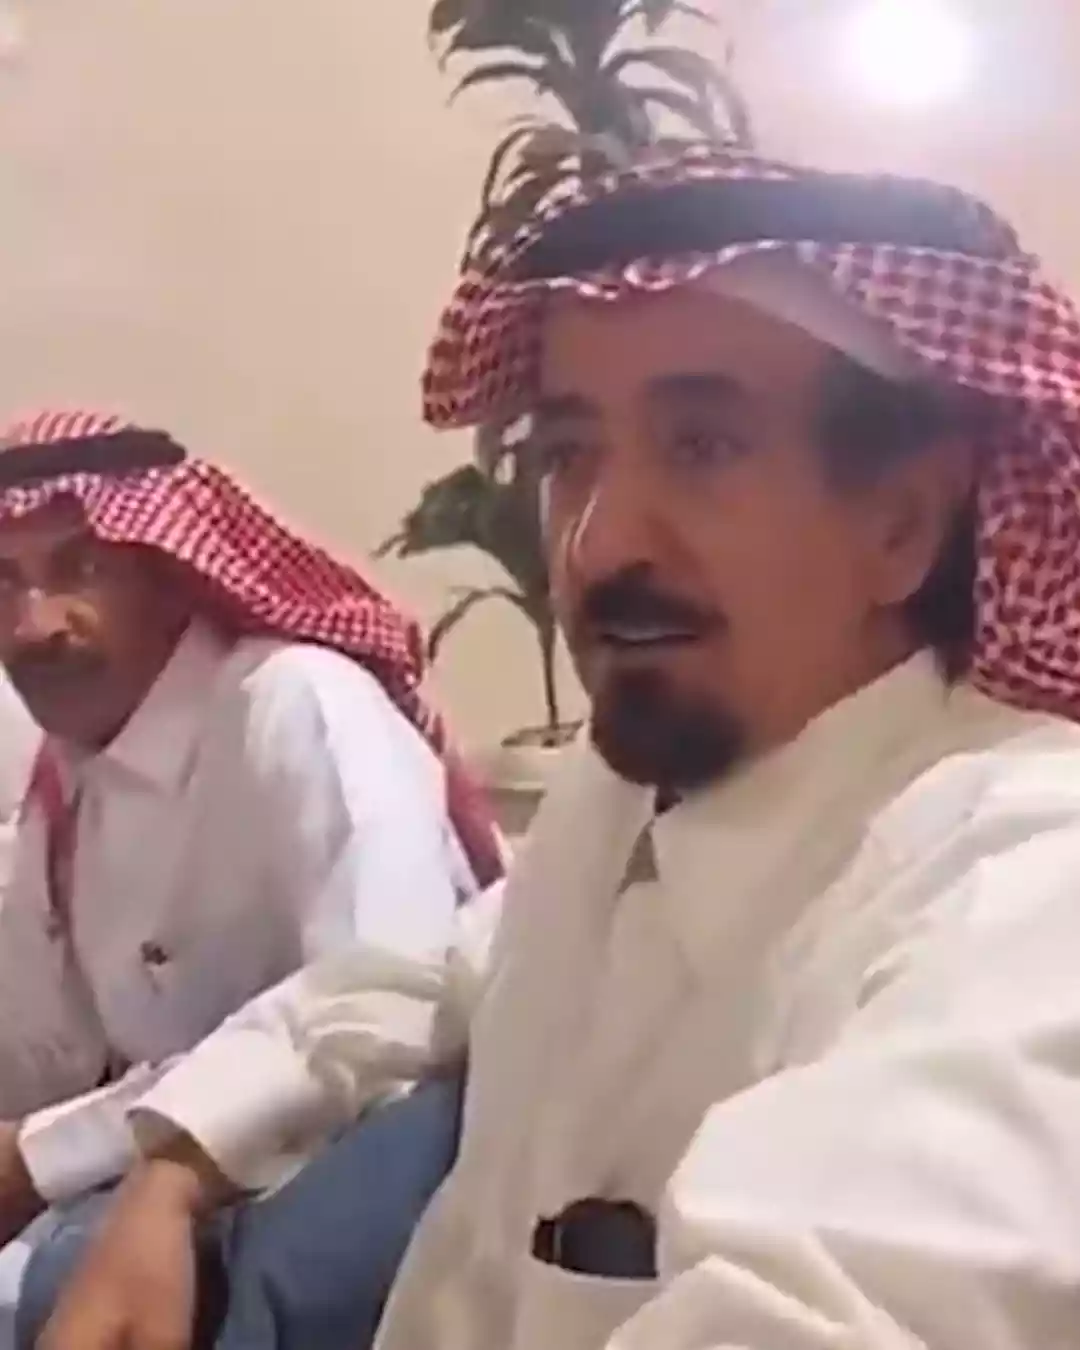 سعودي يتزوج 53 امرأة ويقول: "الخواف لا يسمع كلامي" (فيديو)